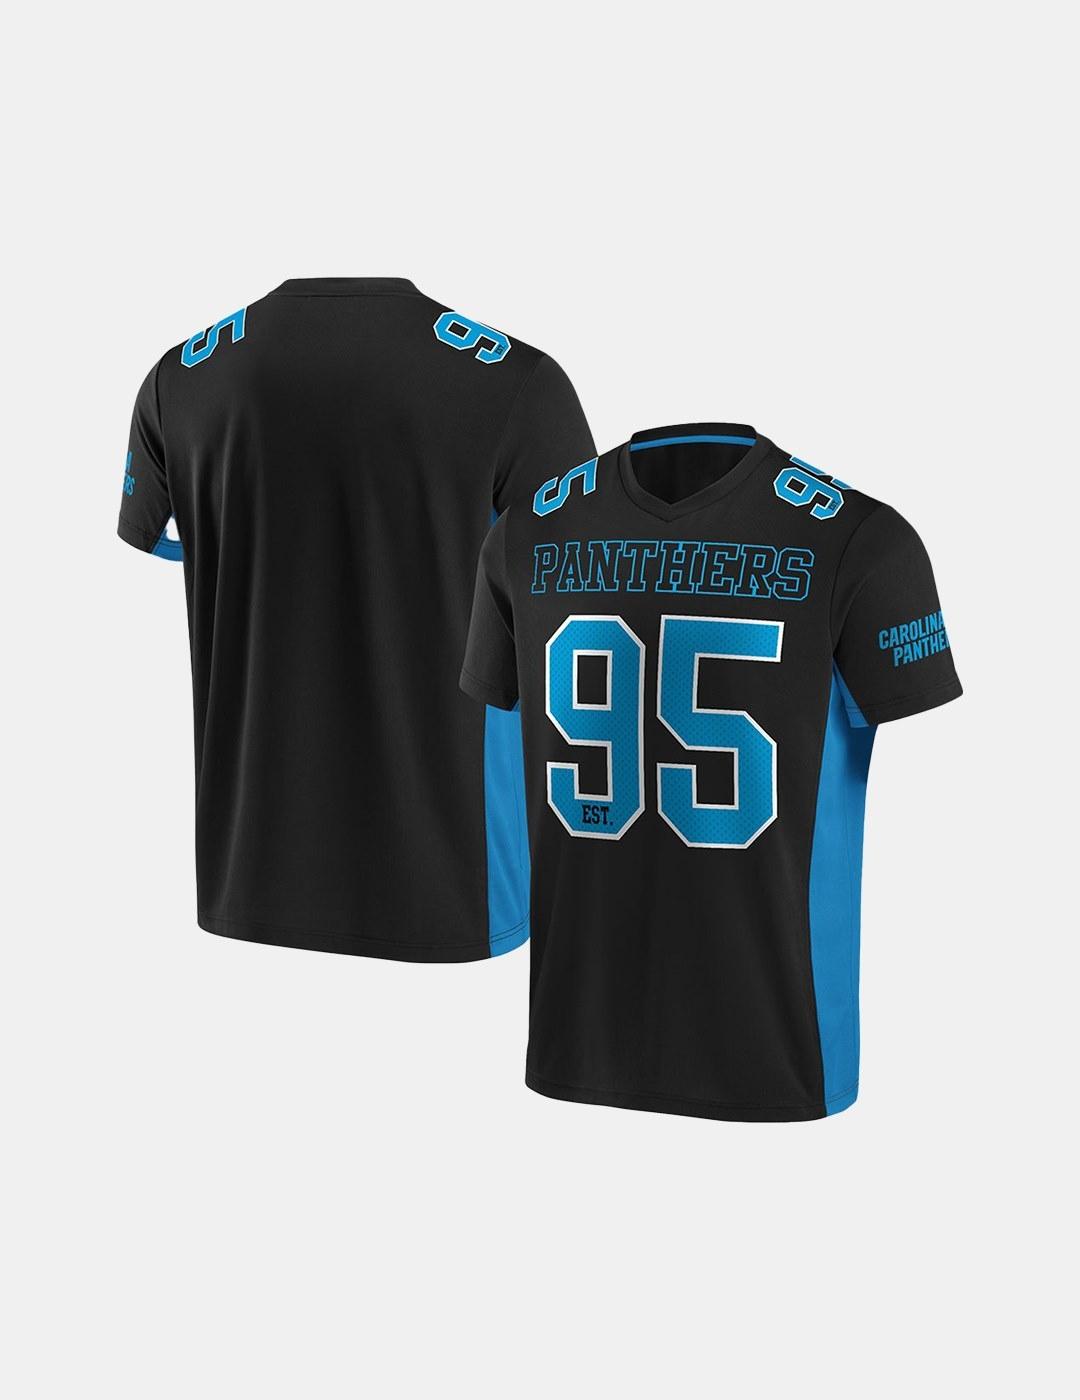 Camiseta Fanatics Nfl Carolina Panthers Value Negro